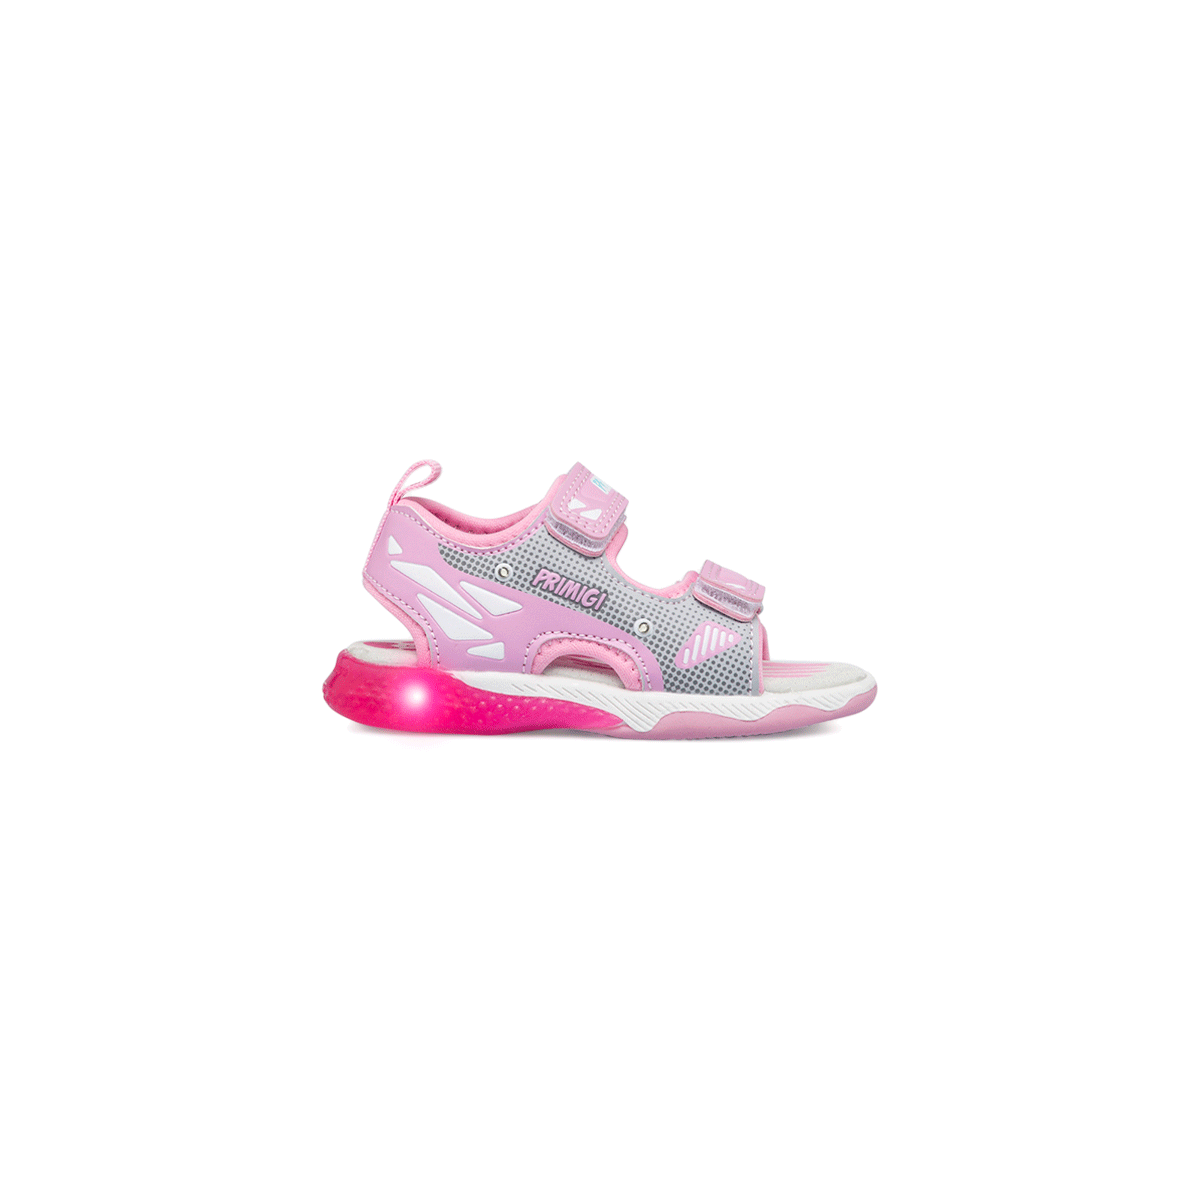 Sandali primi passi rosa con luci da bambina Primigi, Scarpe Primi passi, SKU k281000184, Immagine 0